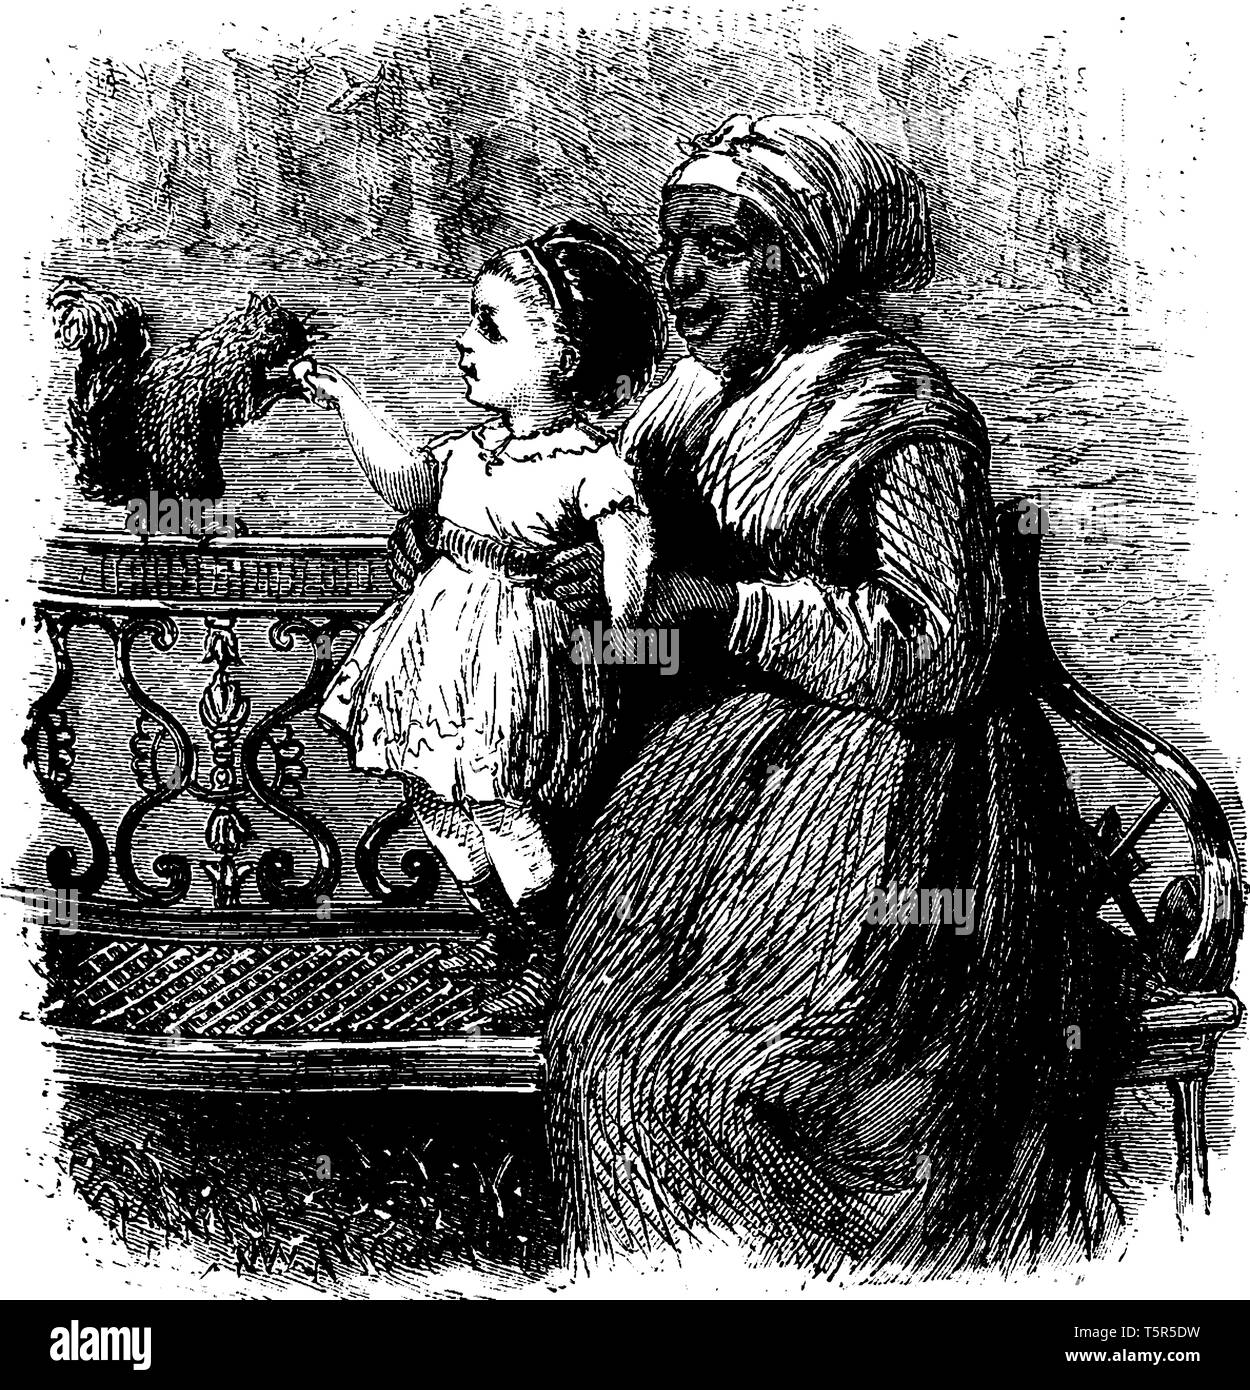 Una donna seduta sul banco di lavoro e trattenere il bambino in mani, bambino guardando lo scoiattolo, vintage disegno della linea di incisione o illustrazione Illustrazione Vettoriale